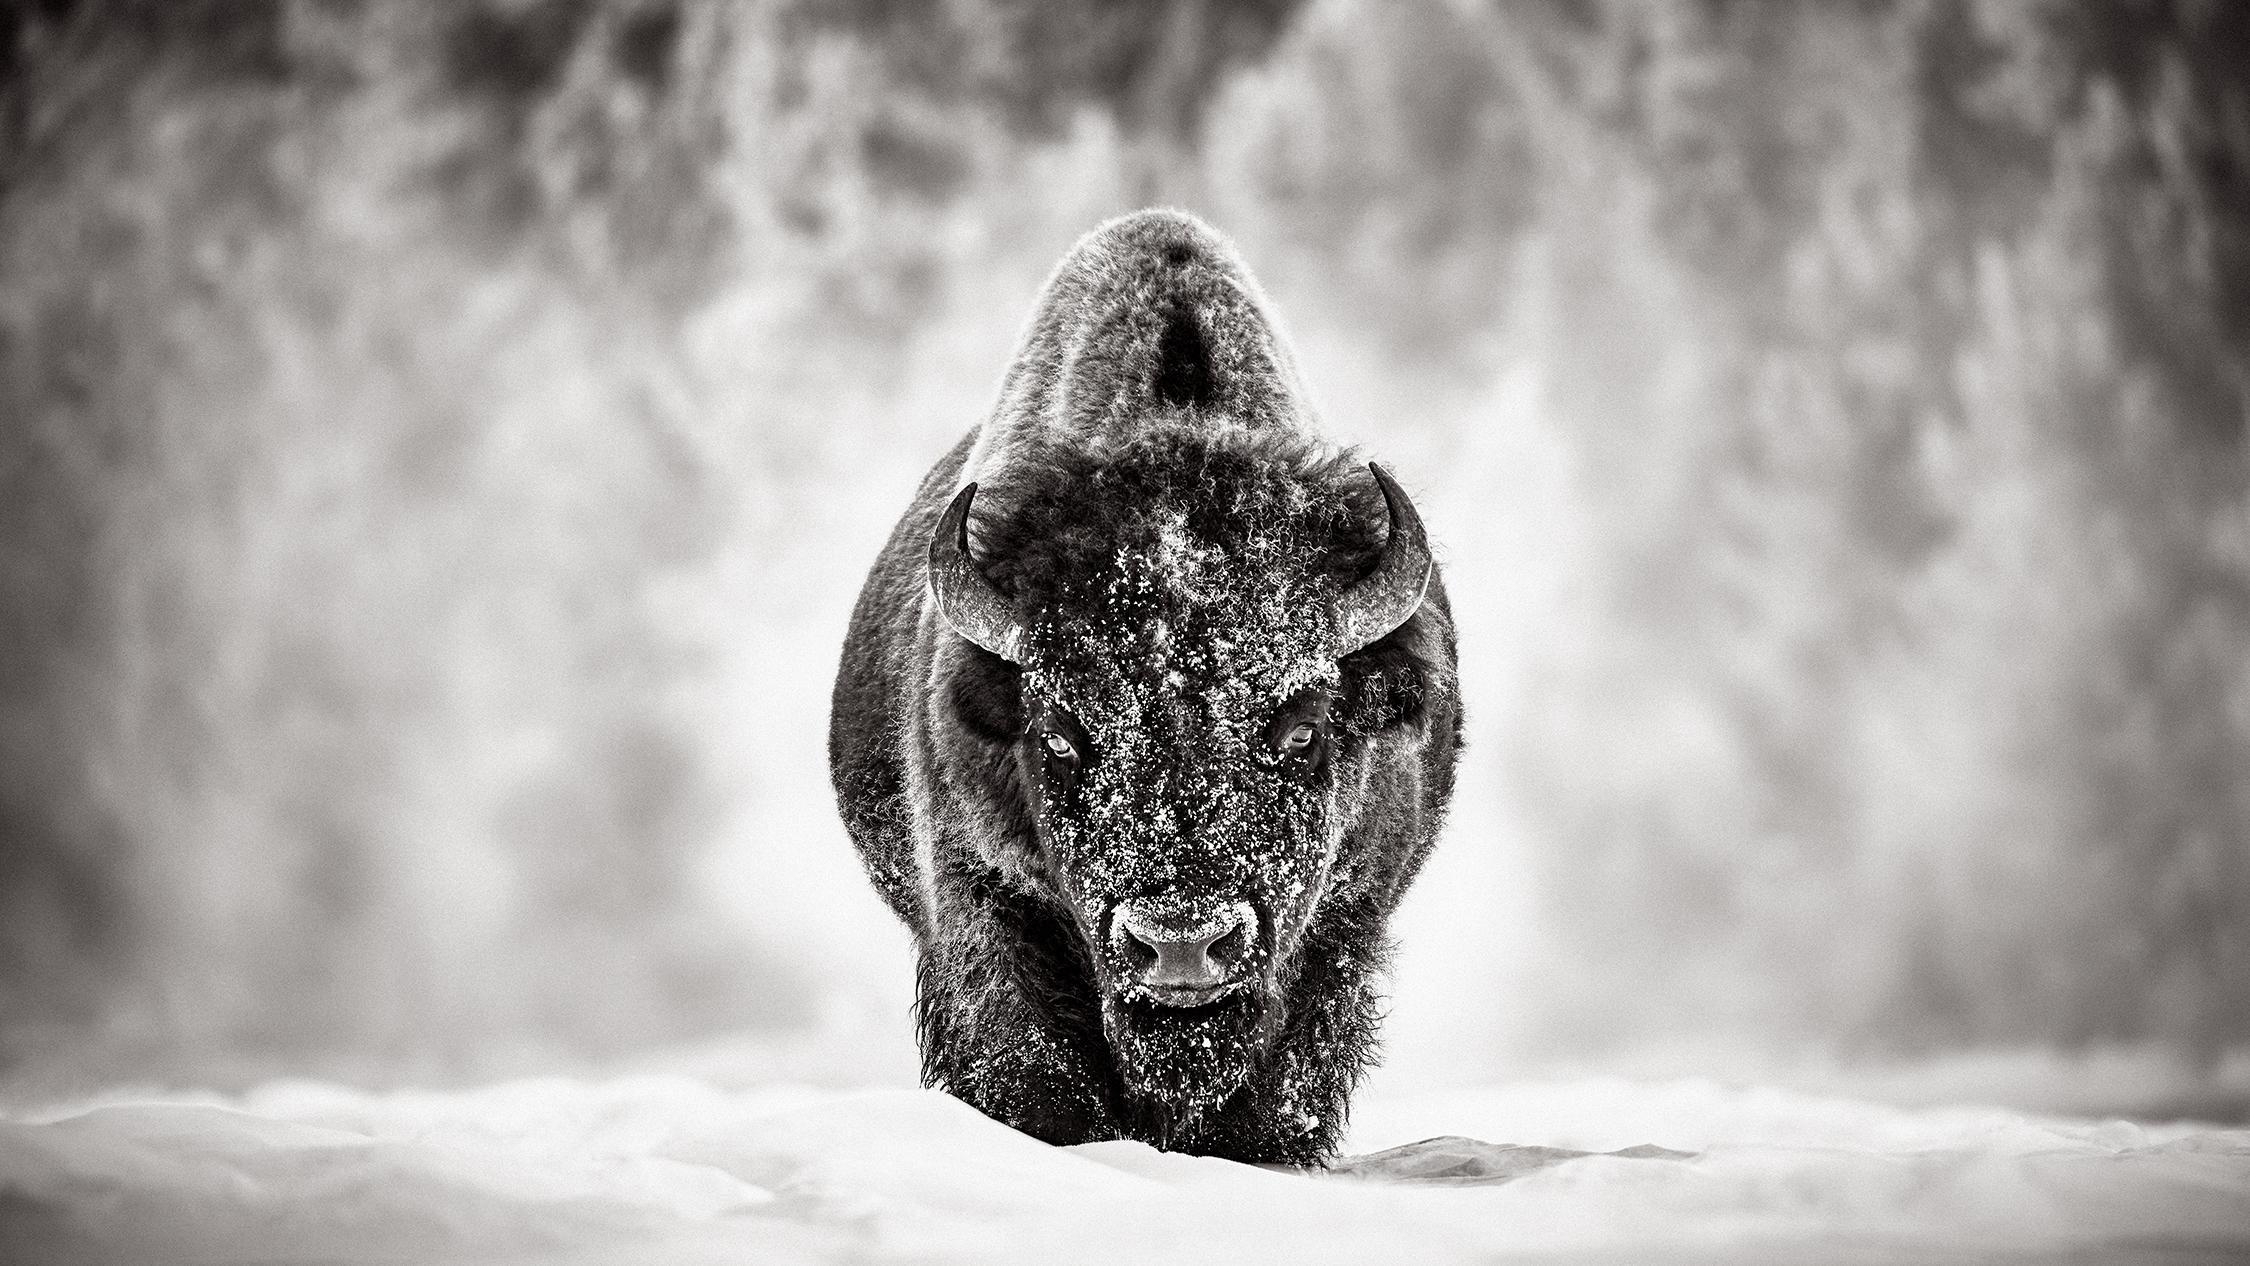 Black and White Photograph Drew Doggett - Un incroyable portrait d'un bison dans la neige dans un parc national de Yellowstone 